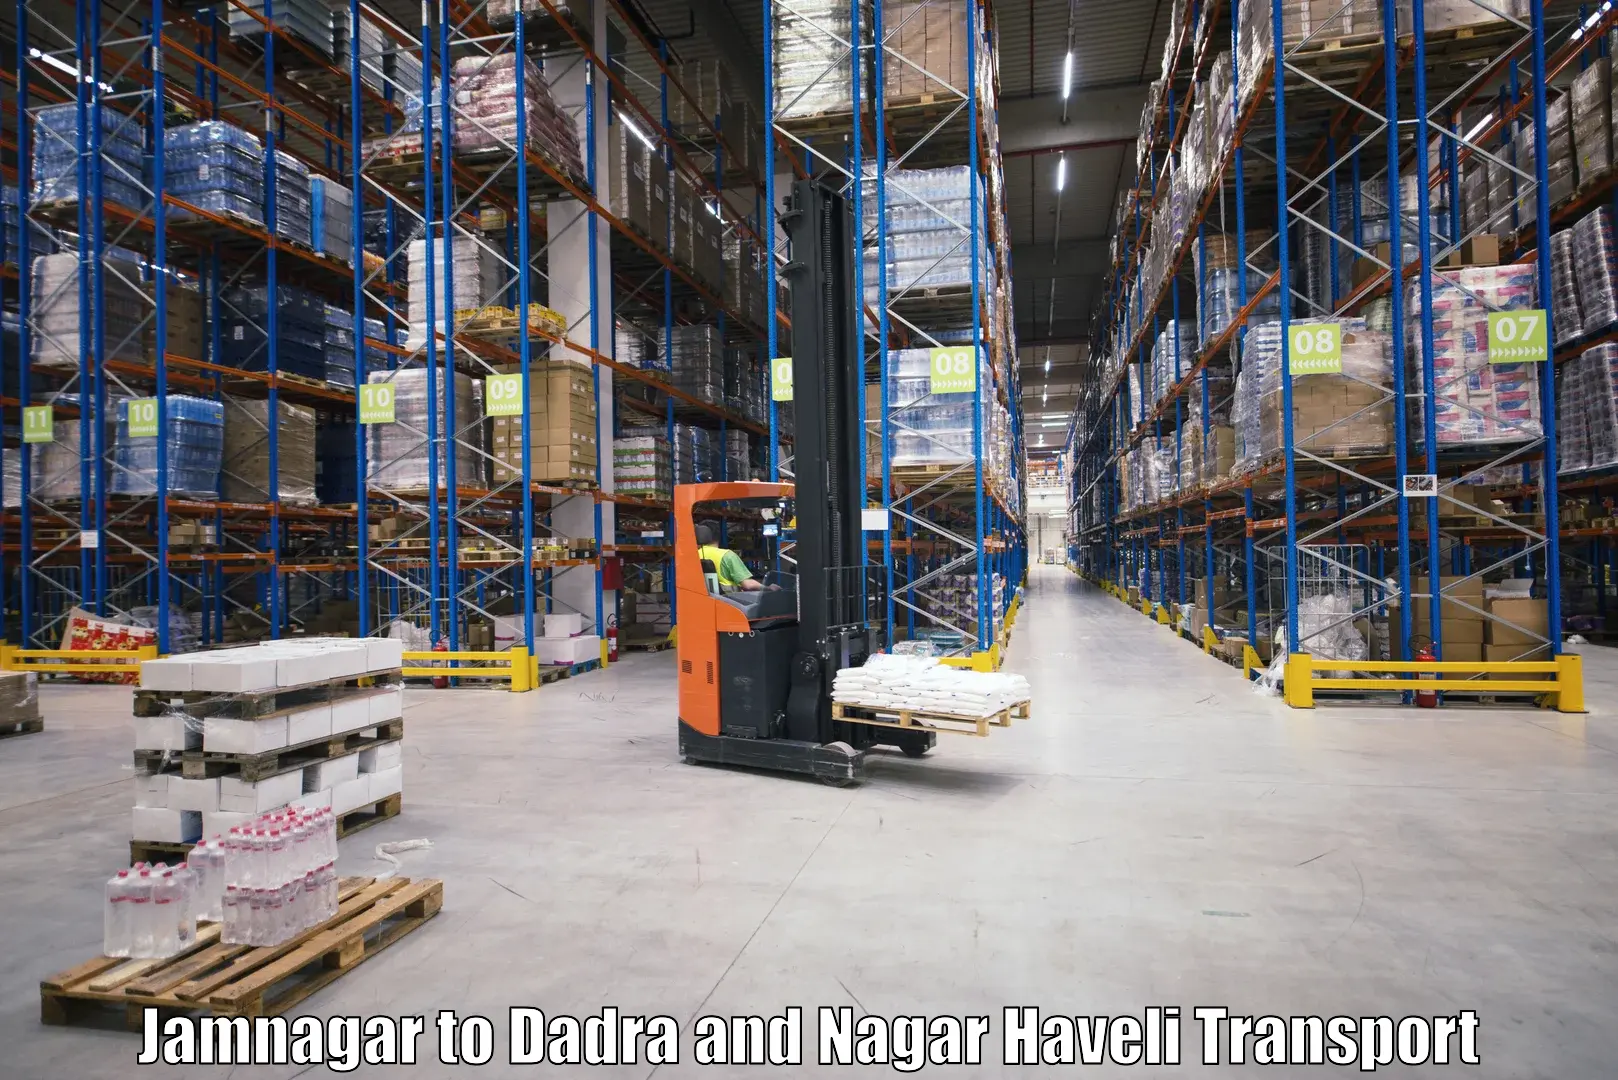 Logistics transportation services Jamnagar to Dadra and Nagar Haveli